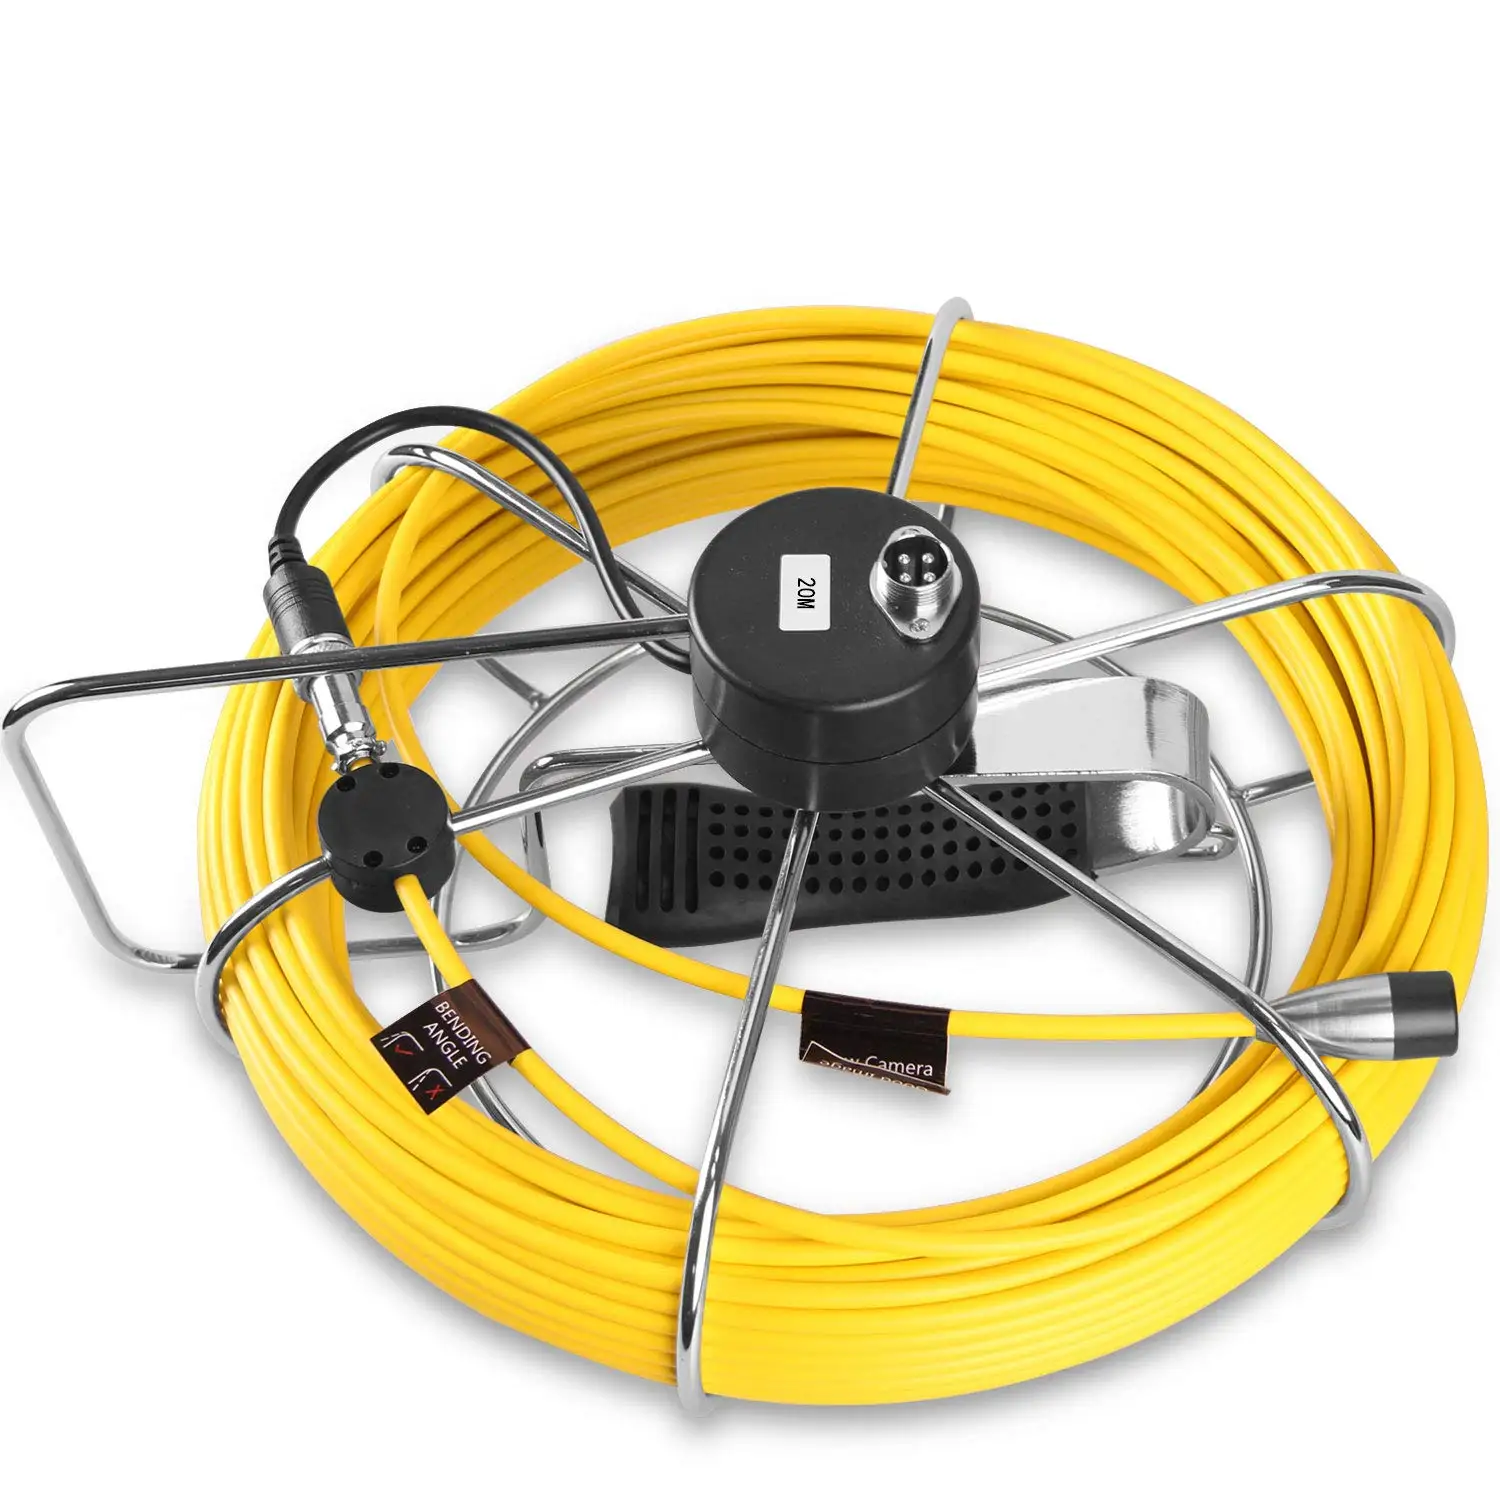 HBUDS 7D1 20 м кабель с железной катушкой для трубы канализационных трубопроводов инспекции камеры(только для брендов: HBUDS, IHBUDS, Anysuns, Tiang